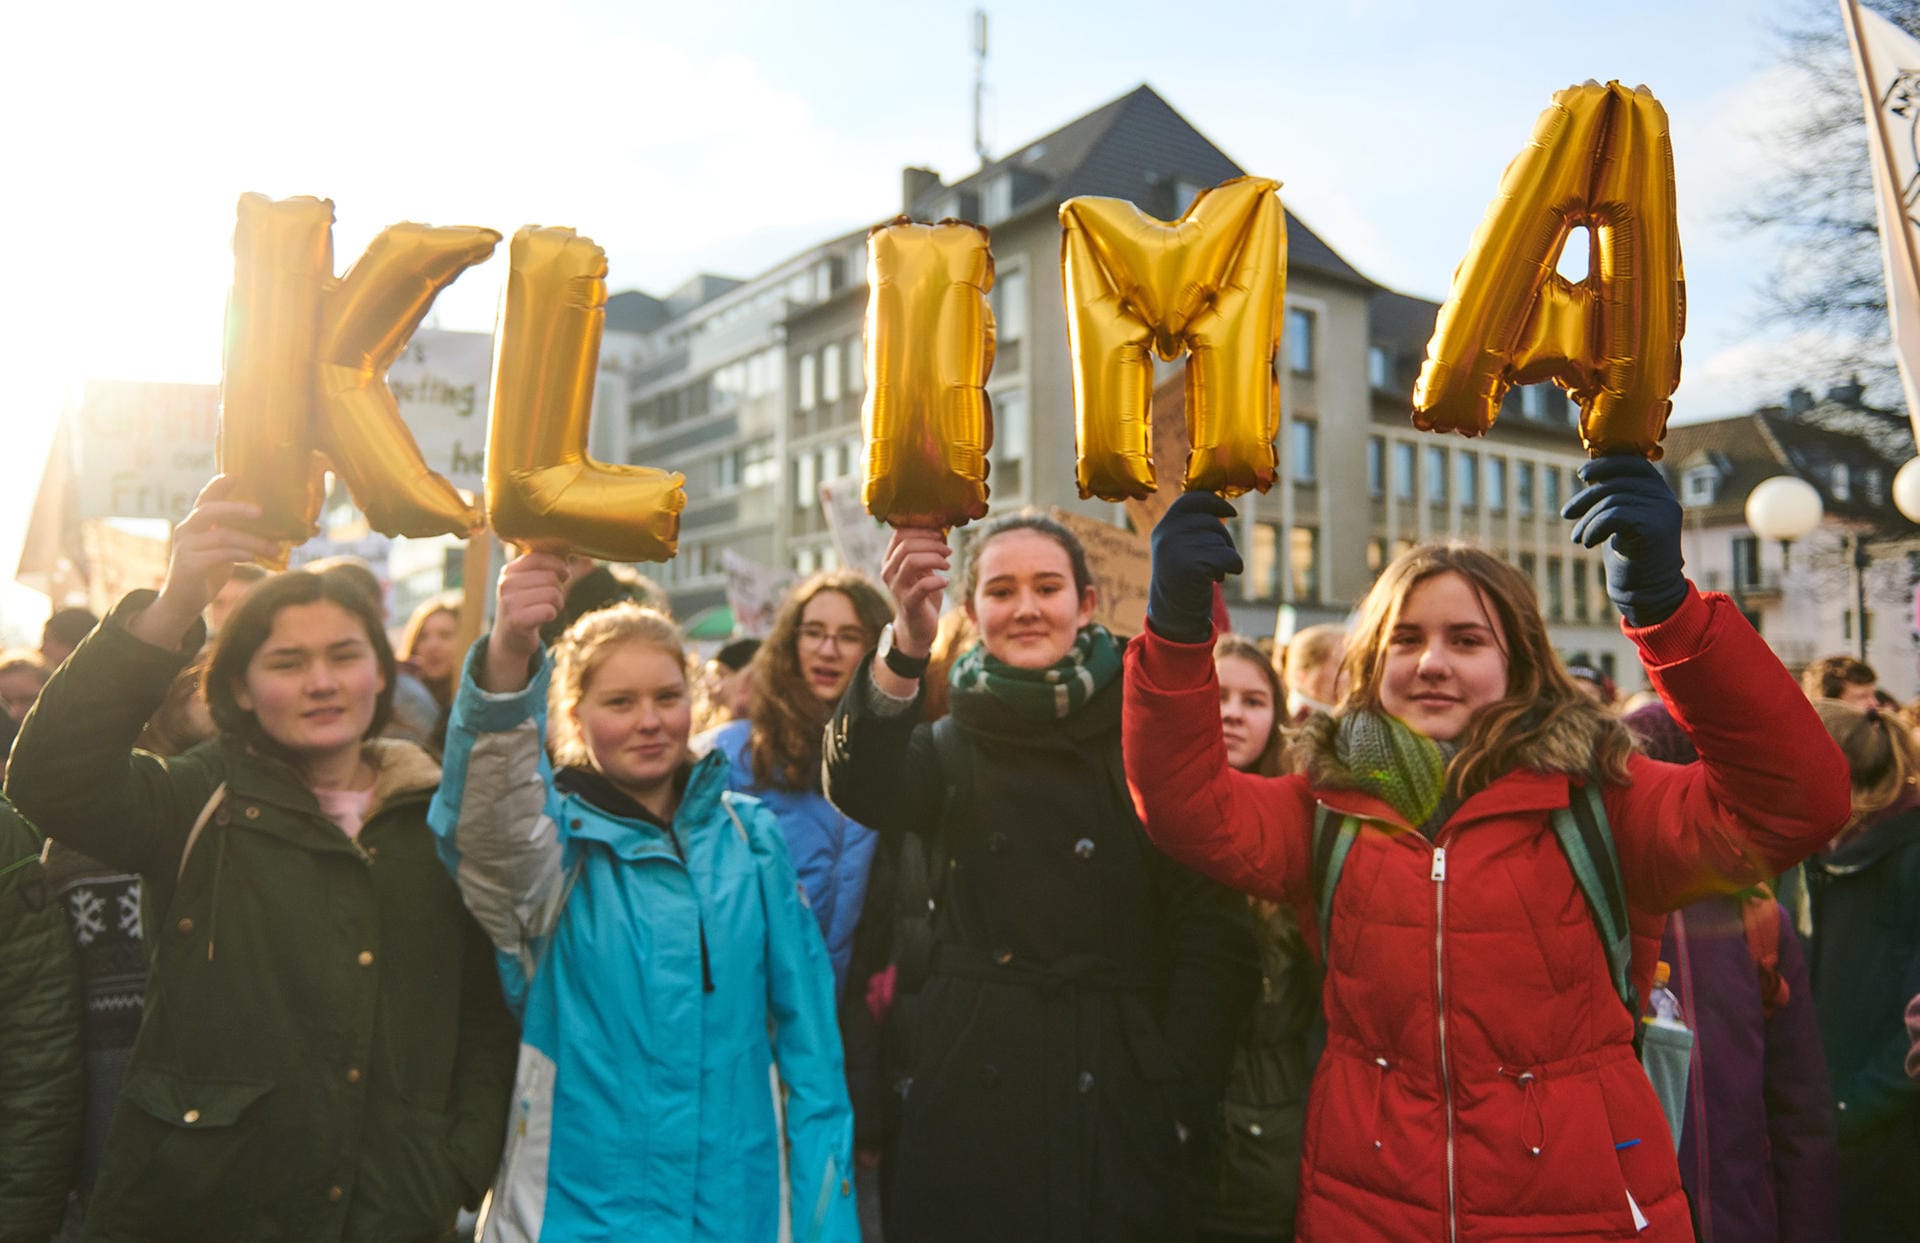 In Bonn formen Schüler das Wort "Klima".